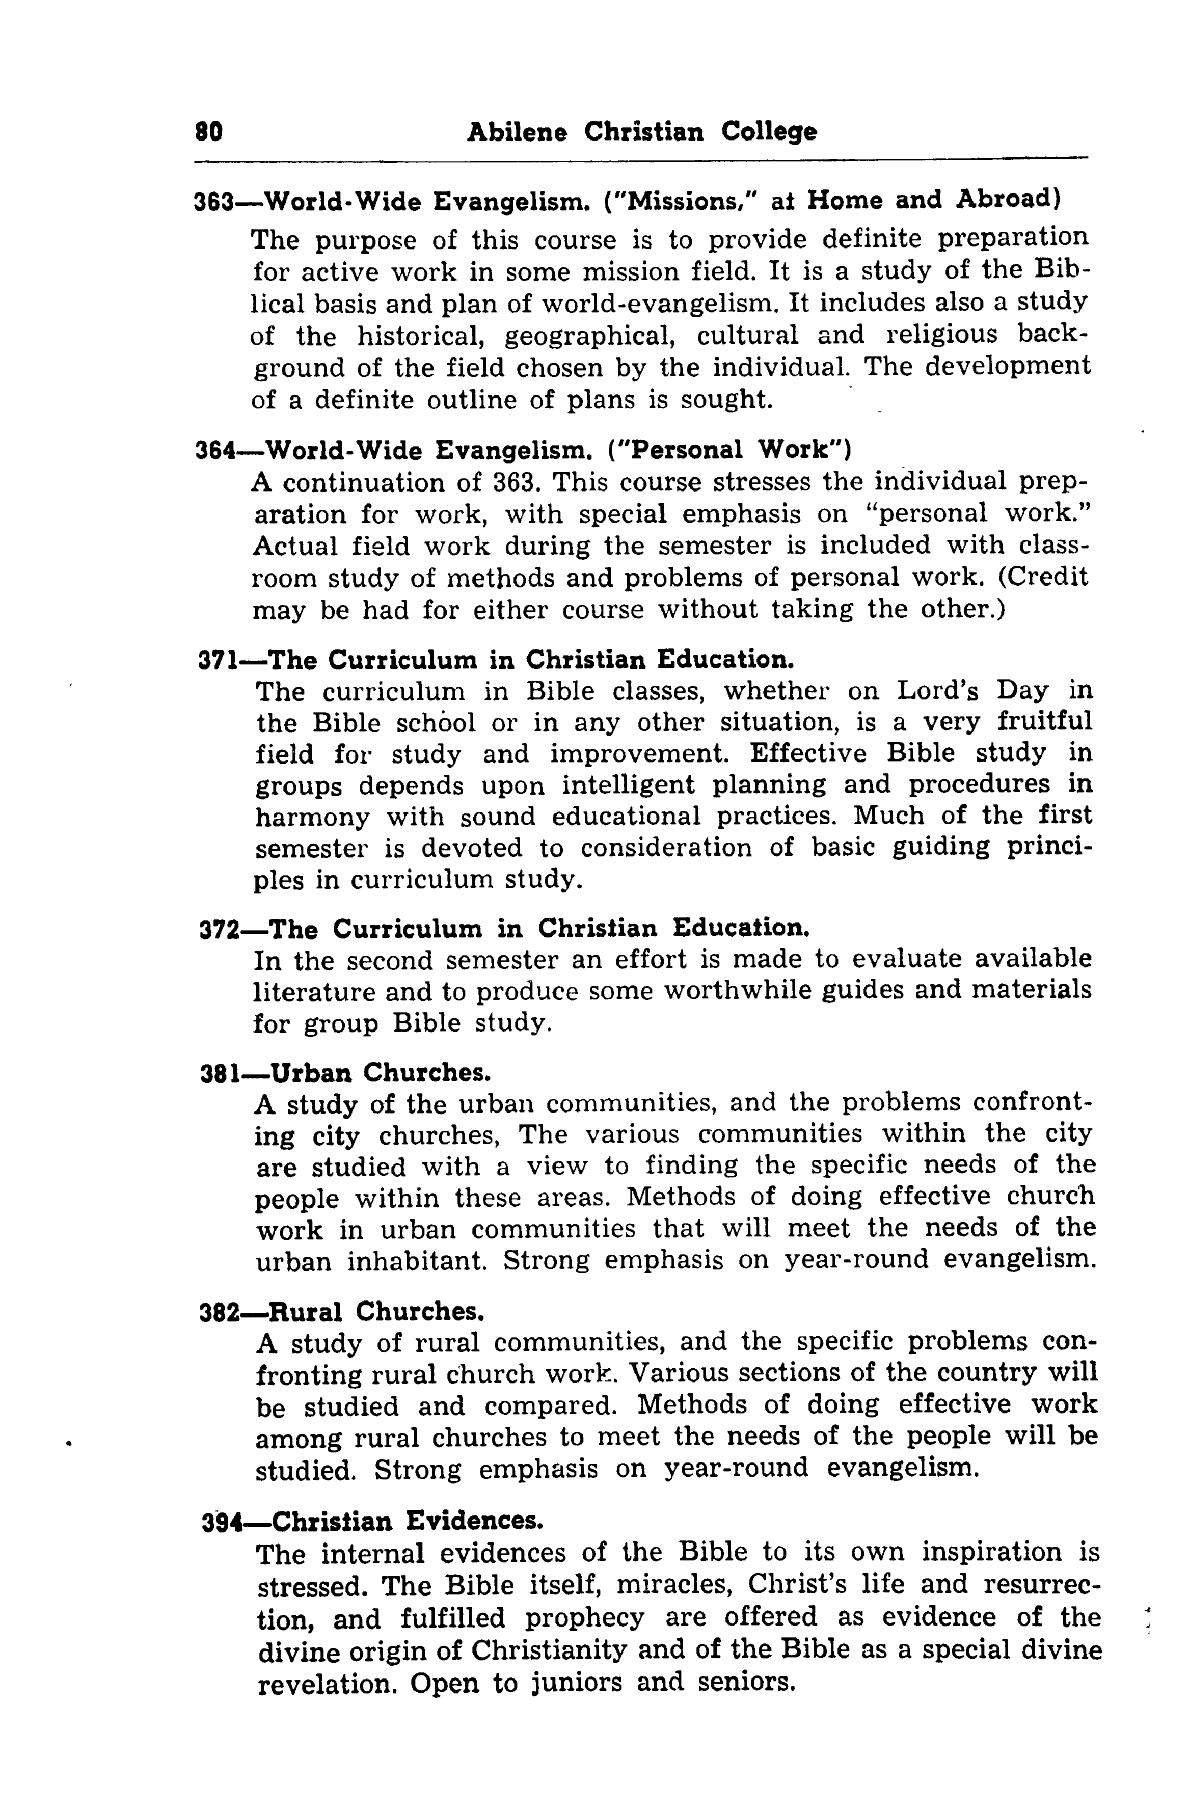 Catalog of Abilene Christian College, 1951-1952
                                                
                                                    80
                                                